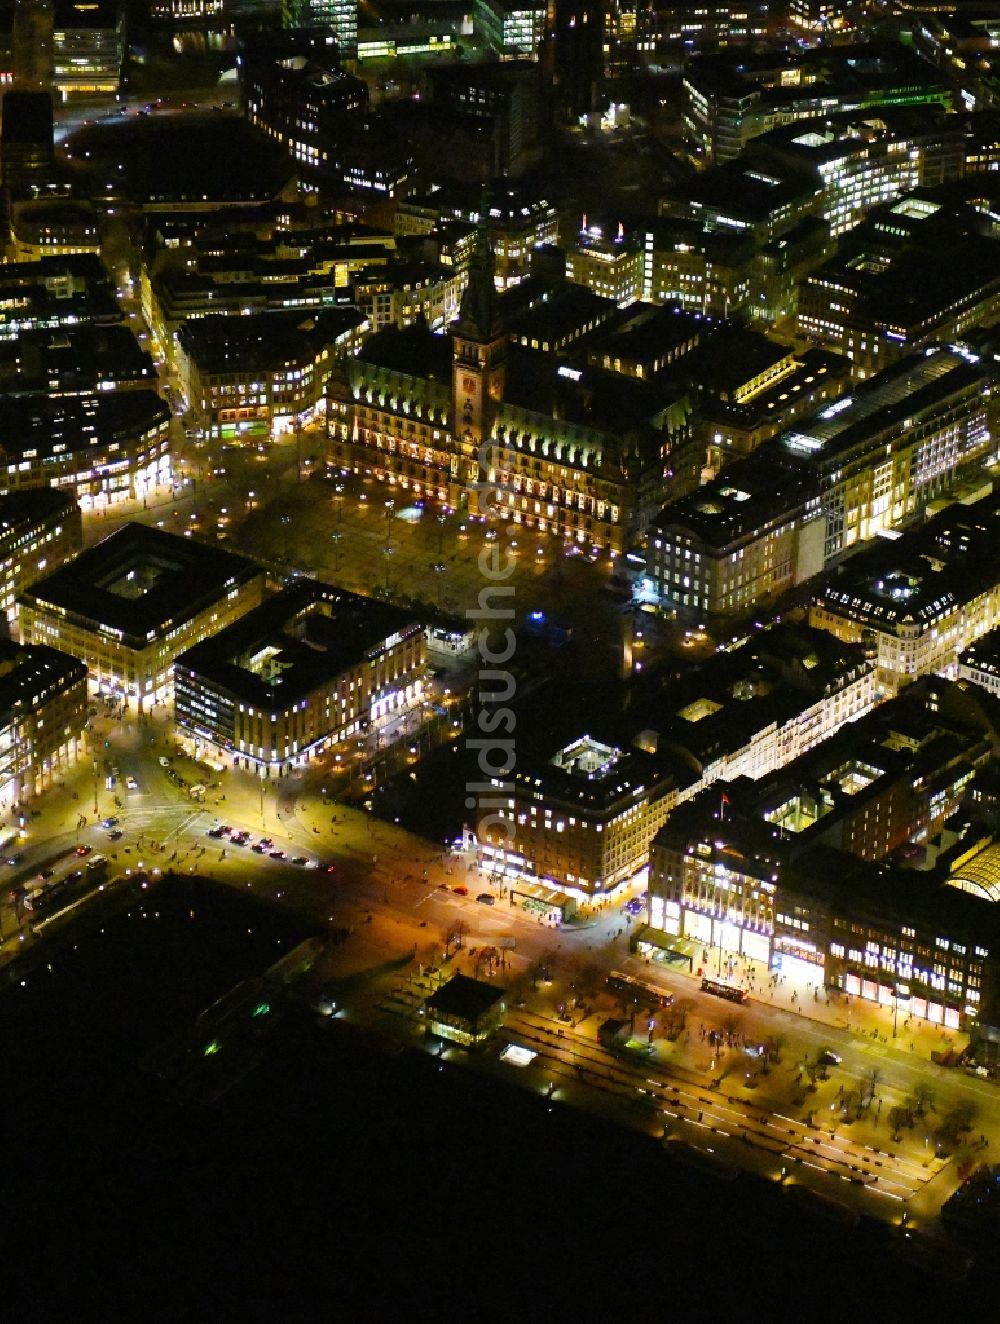 Hamburg bei Nacht von oben - Nachtluftbild Altstadtbereich und Innenstadtzentrum am Ufer der Binnenalster in Hamburg, Deutschland